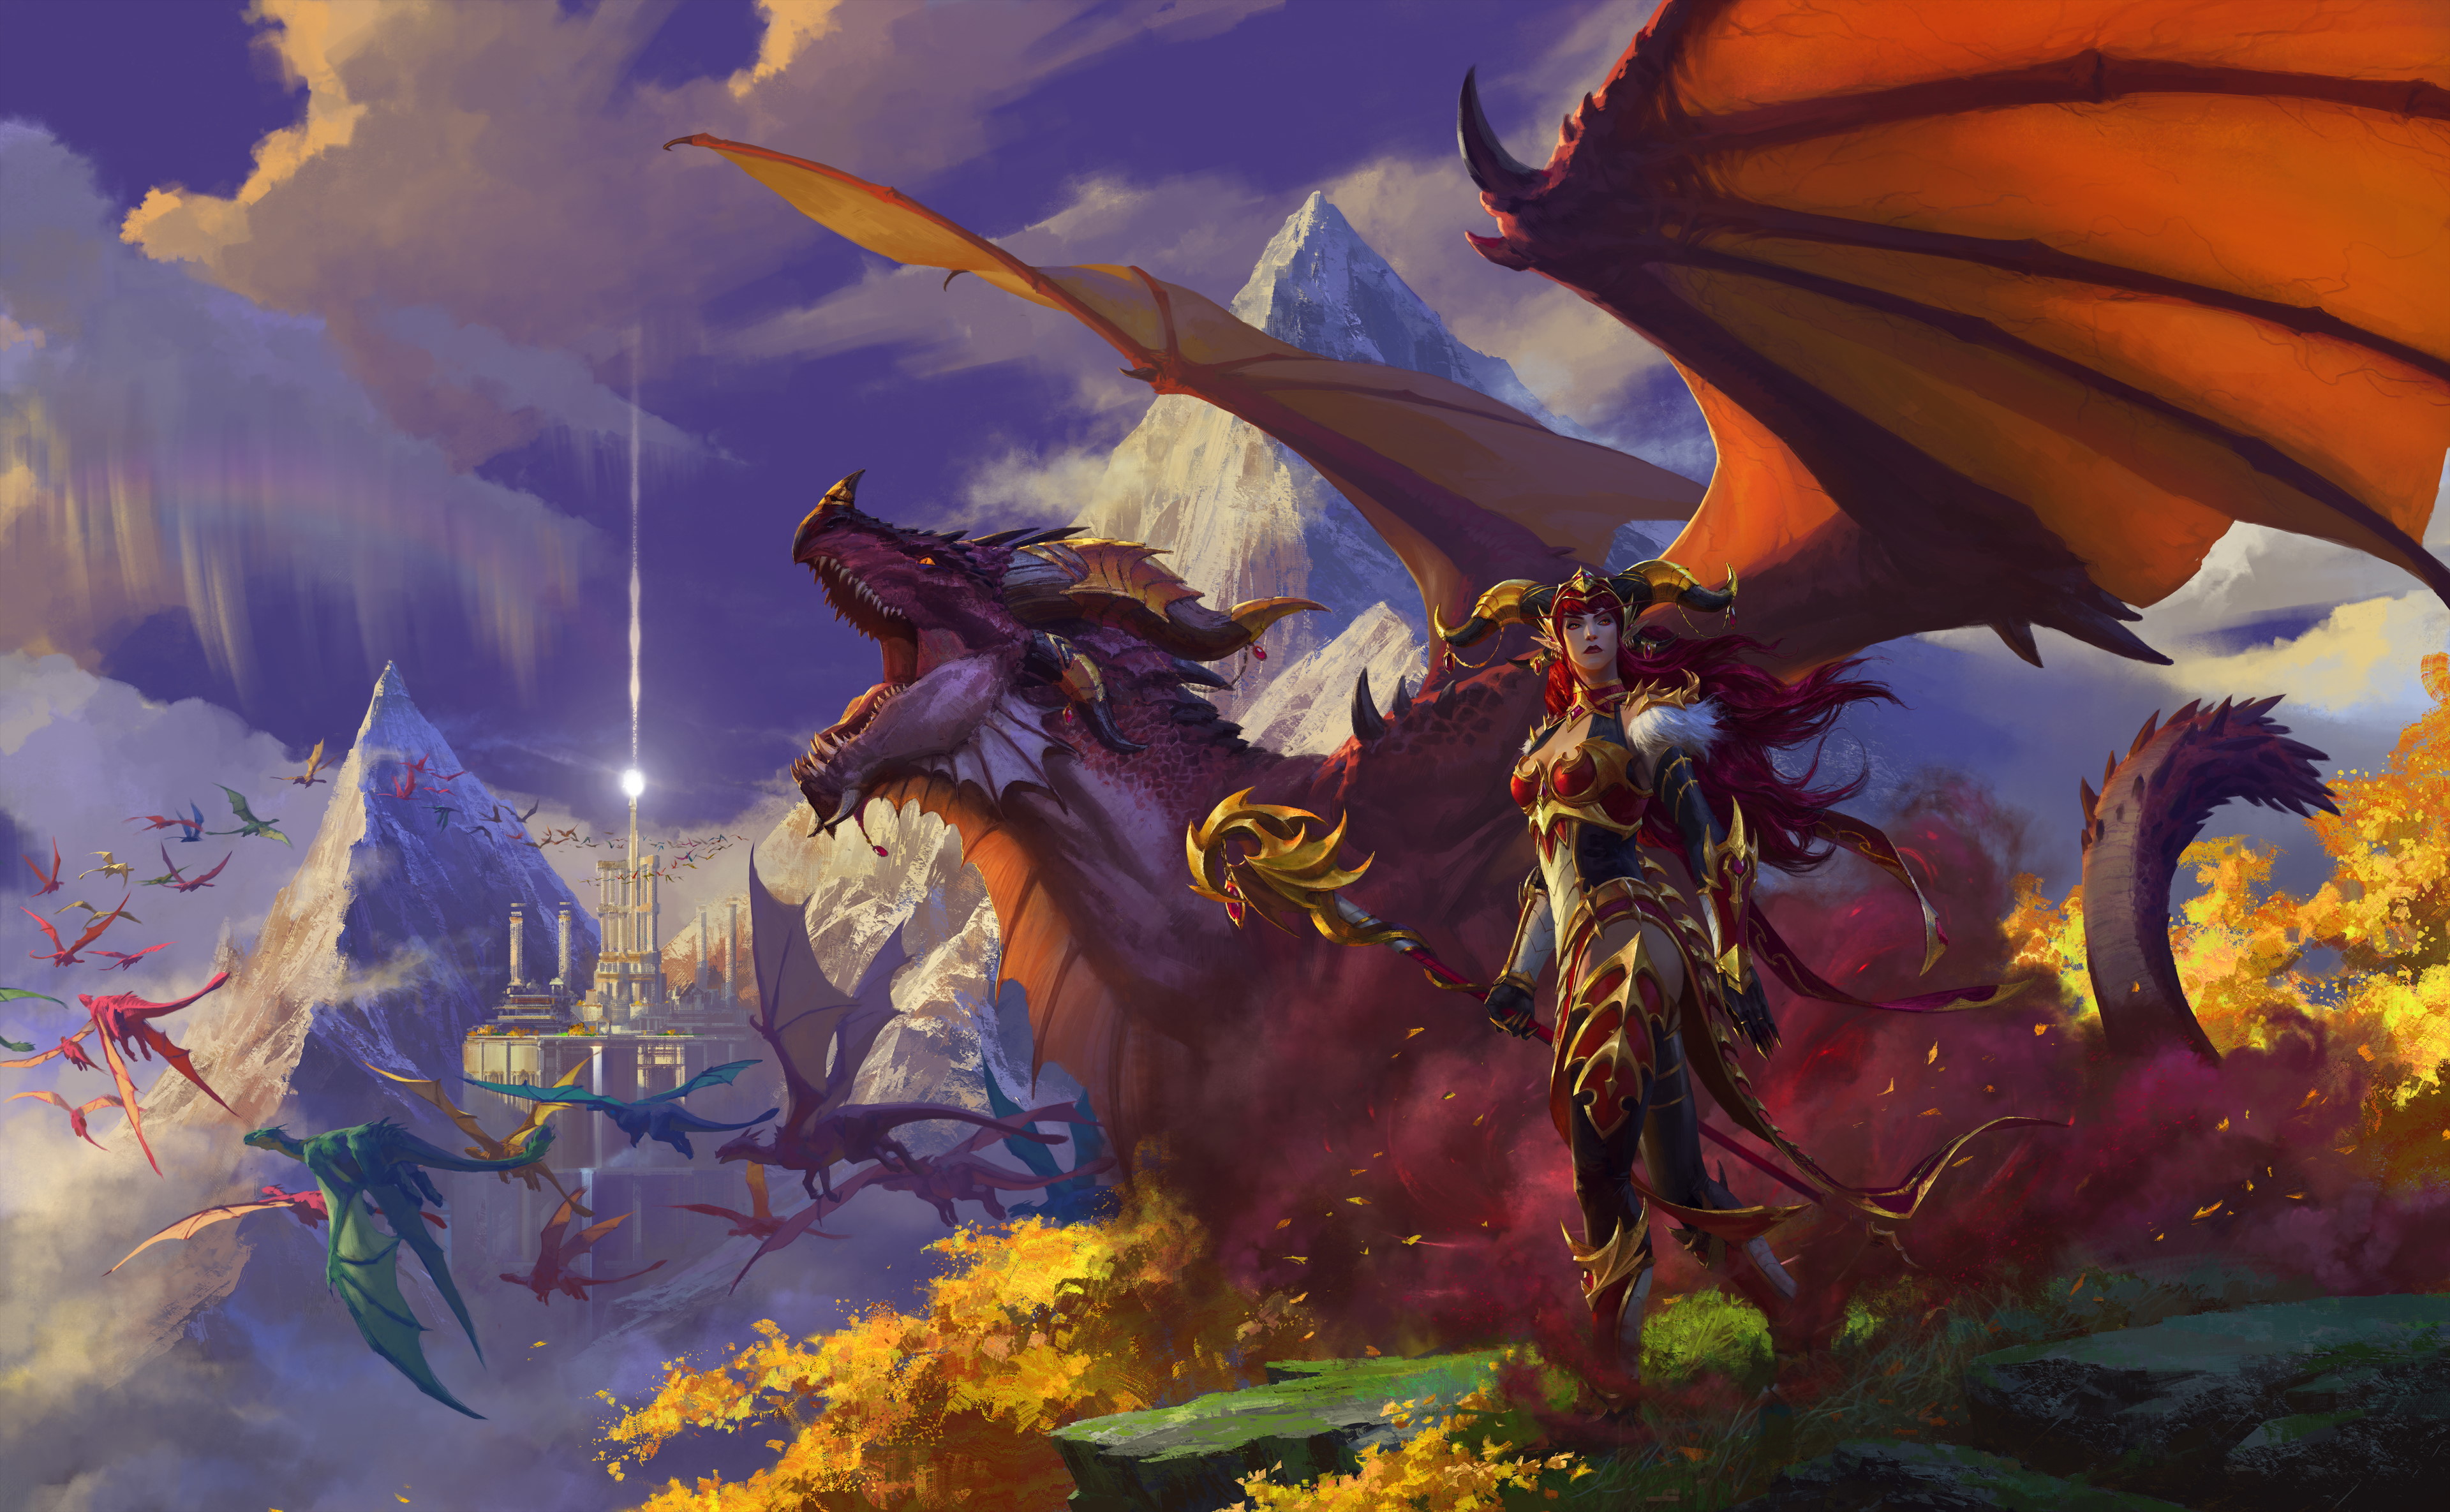 Світ WarcraftL Dragonflight